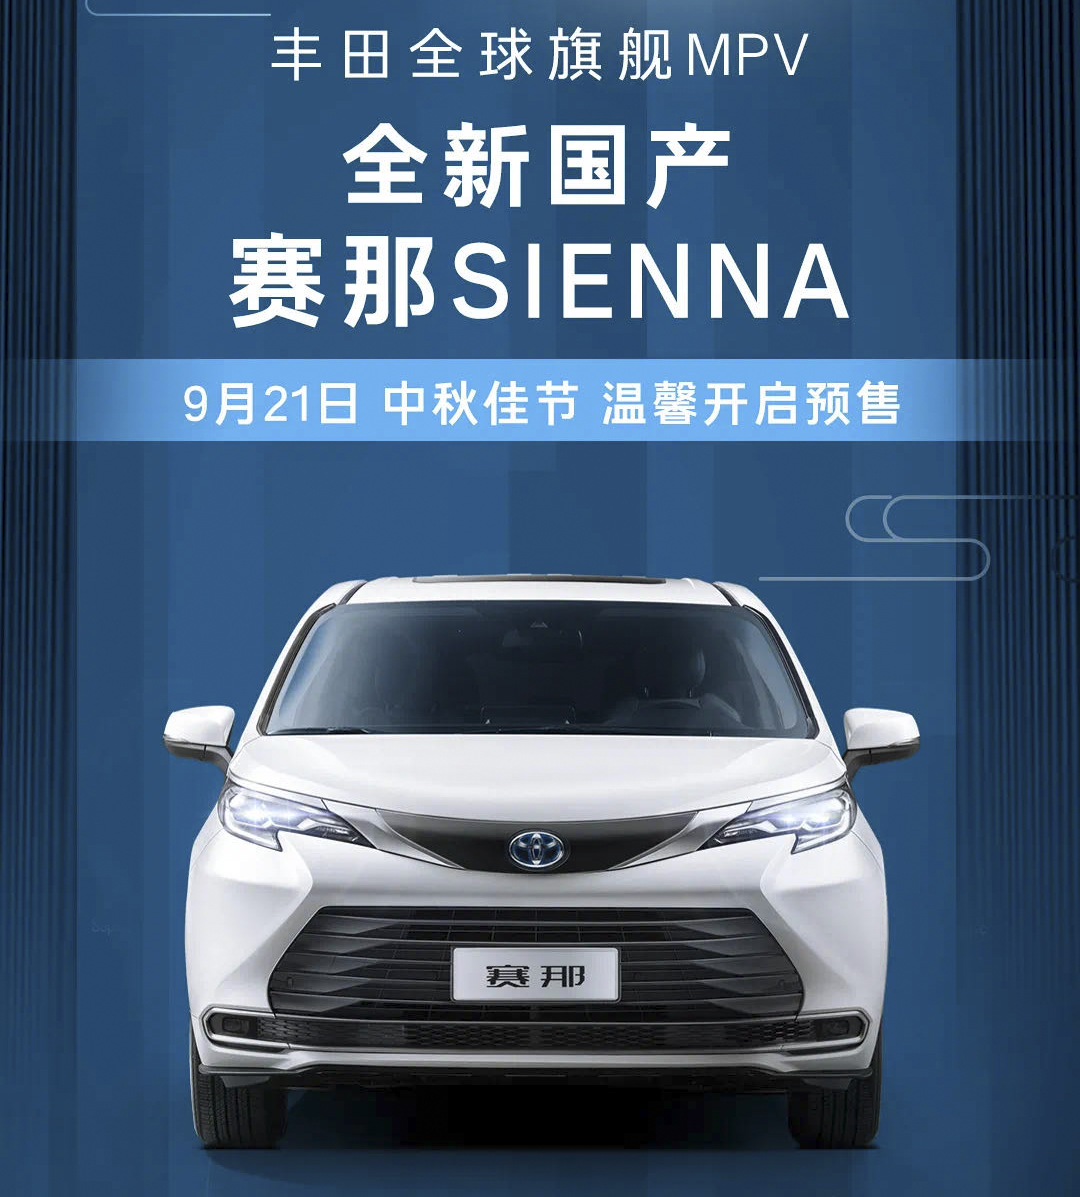 预售32万元起 广汽丰田赛那SIENNA正式开启预售